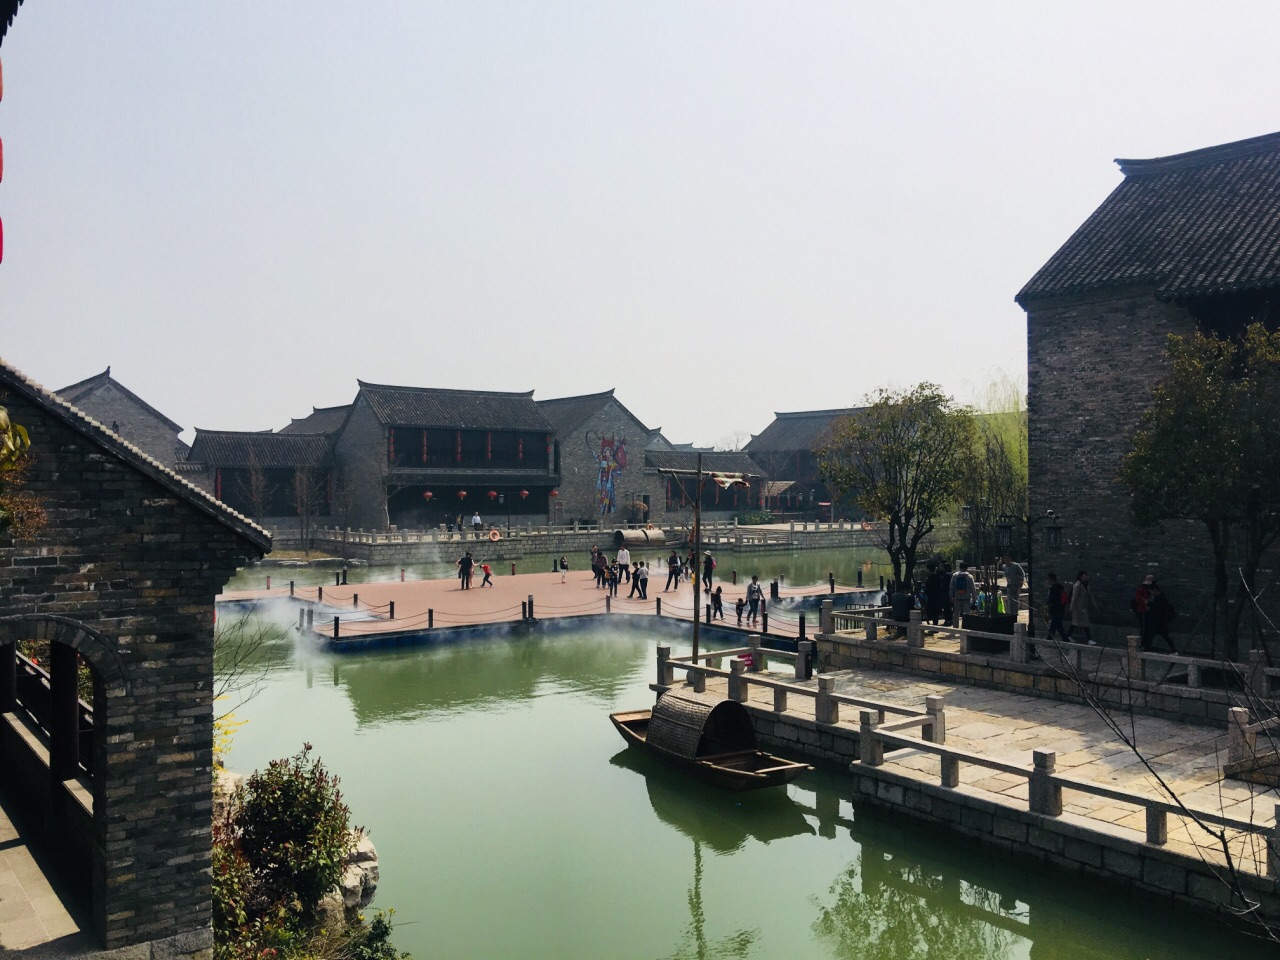 【携程攻略】徐州潘安水镇景点,建设的还行,不过有些问题,镇子里的